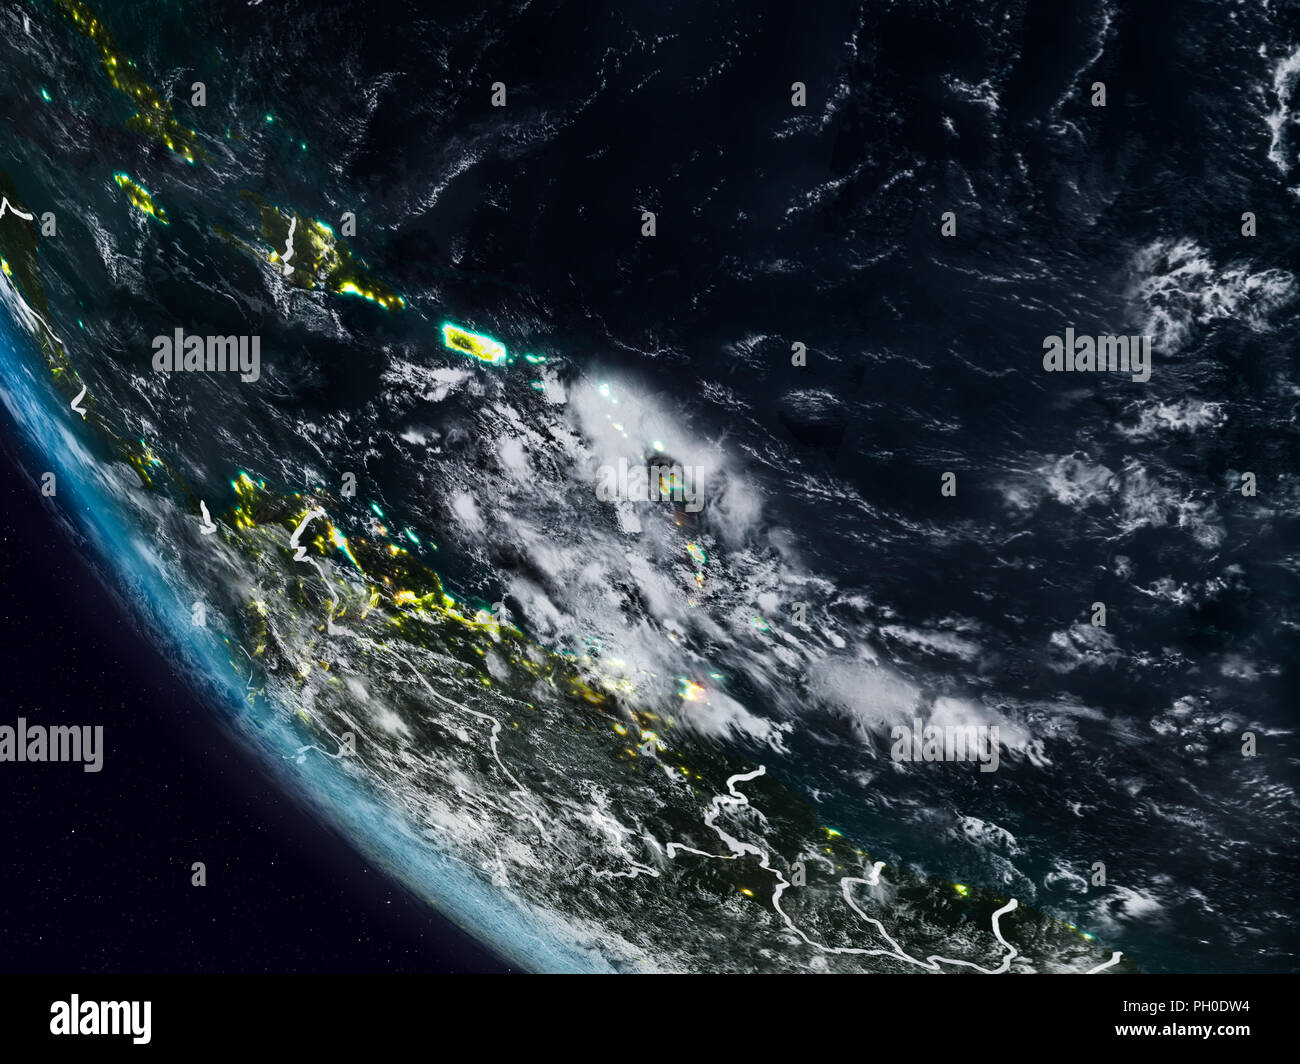 La nuit des Caraïbes à partir de l'espace visible avec frontières du pays. 3D illustration. Éléments de cette image fournie par la NASA. Banque D'Images